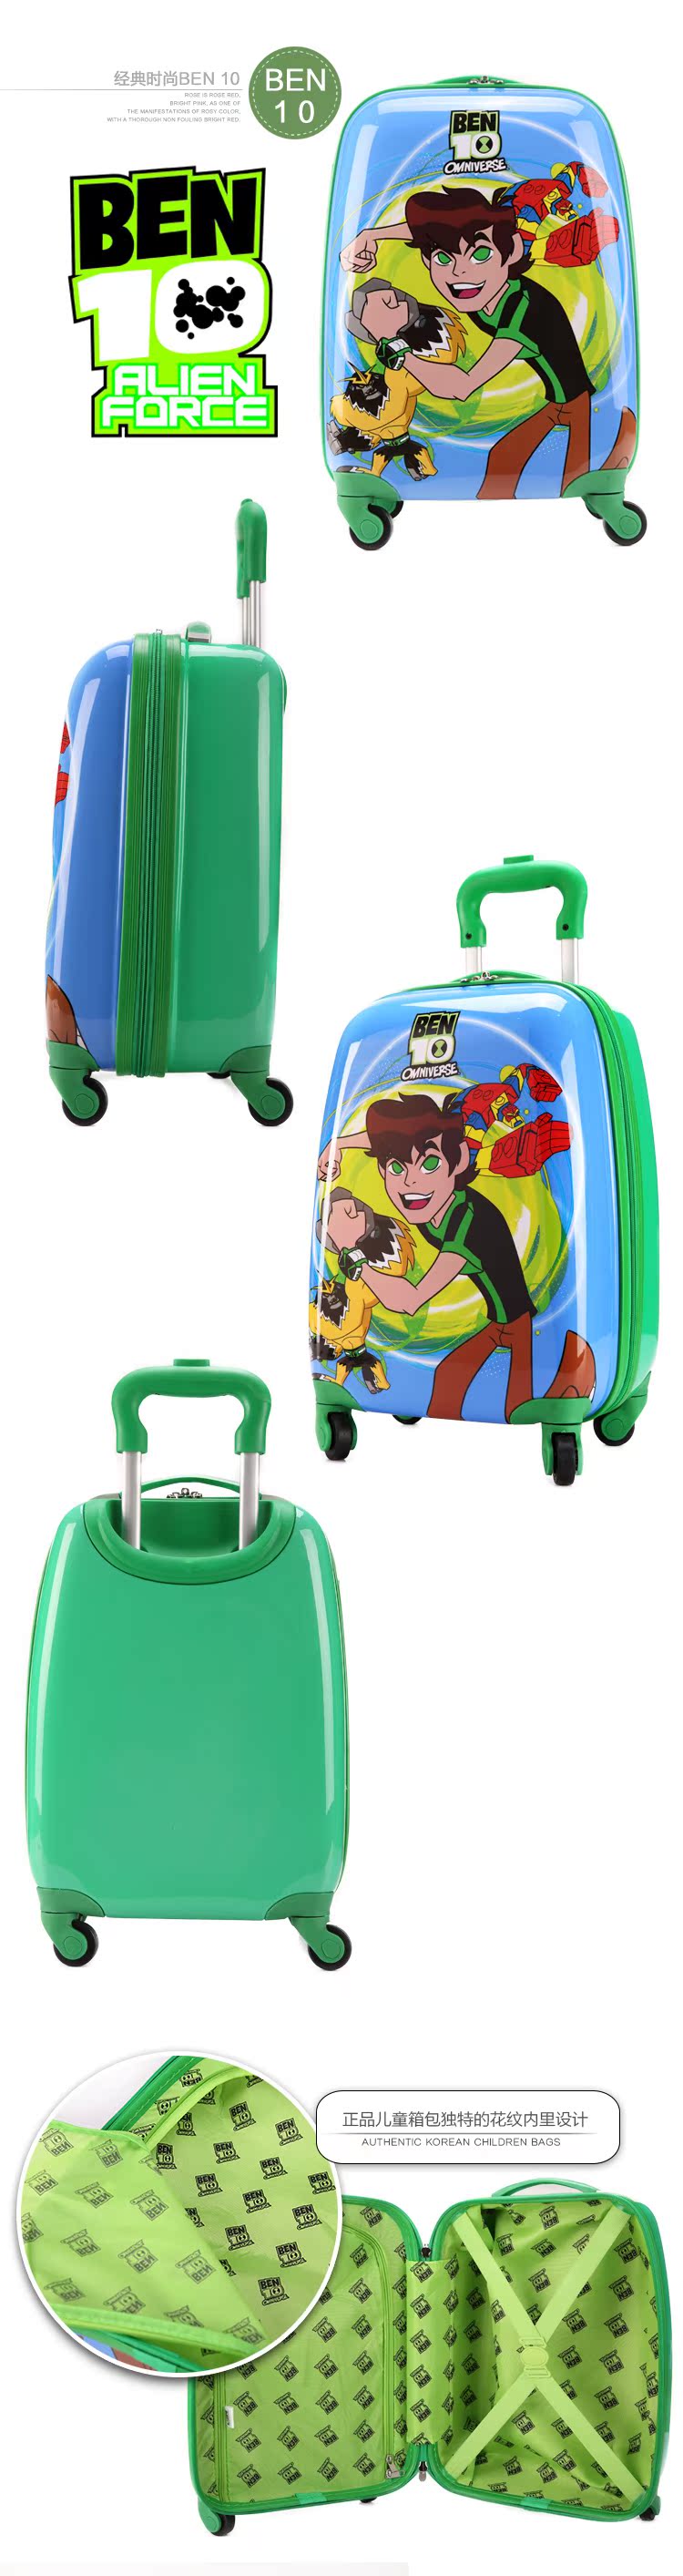 萬寶龍林丹系列 可愛兒童拉桿箱萬向輪寶寶旅行箱包卡通20寸男女孩行李箱子 萬寶龍a貨